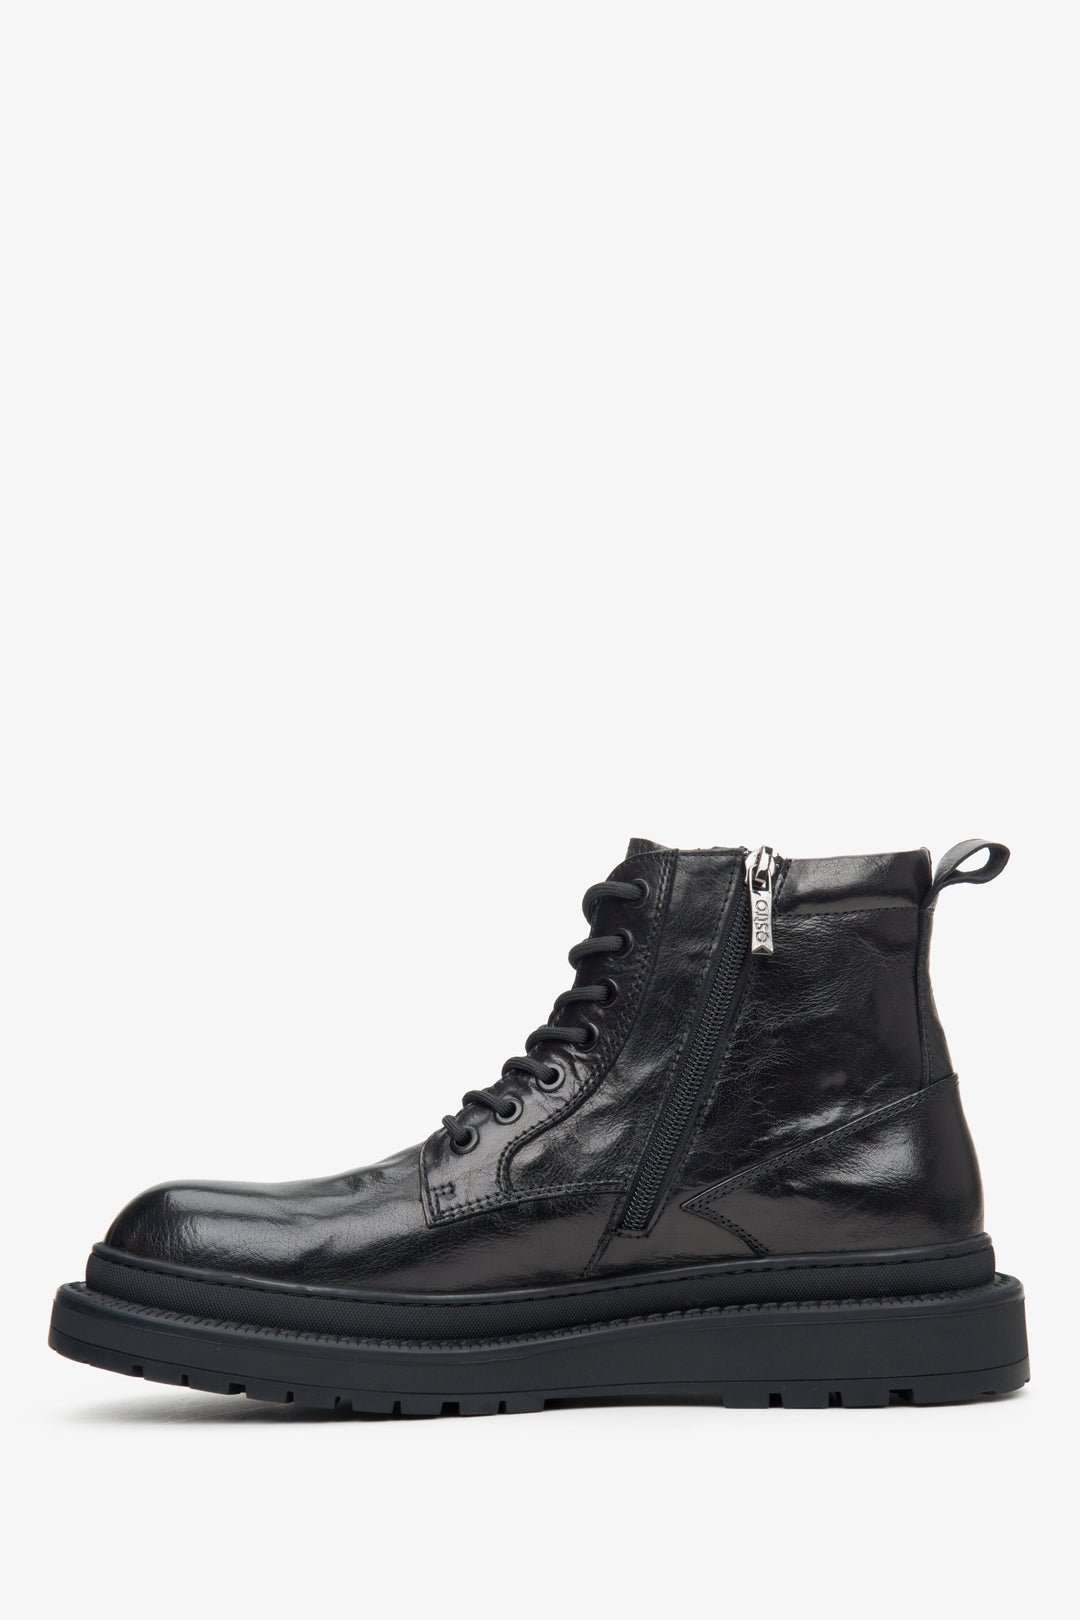 Men's black leather boots by Estro - shoe profile.